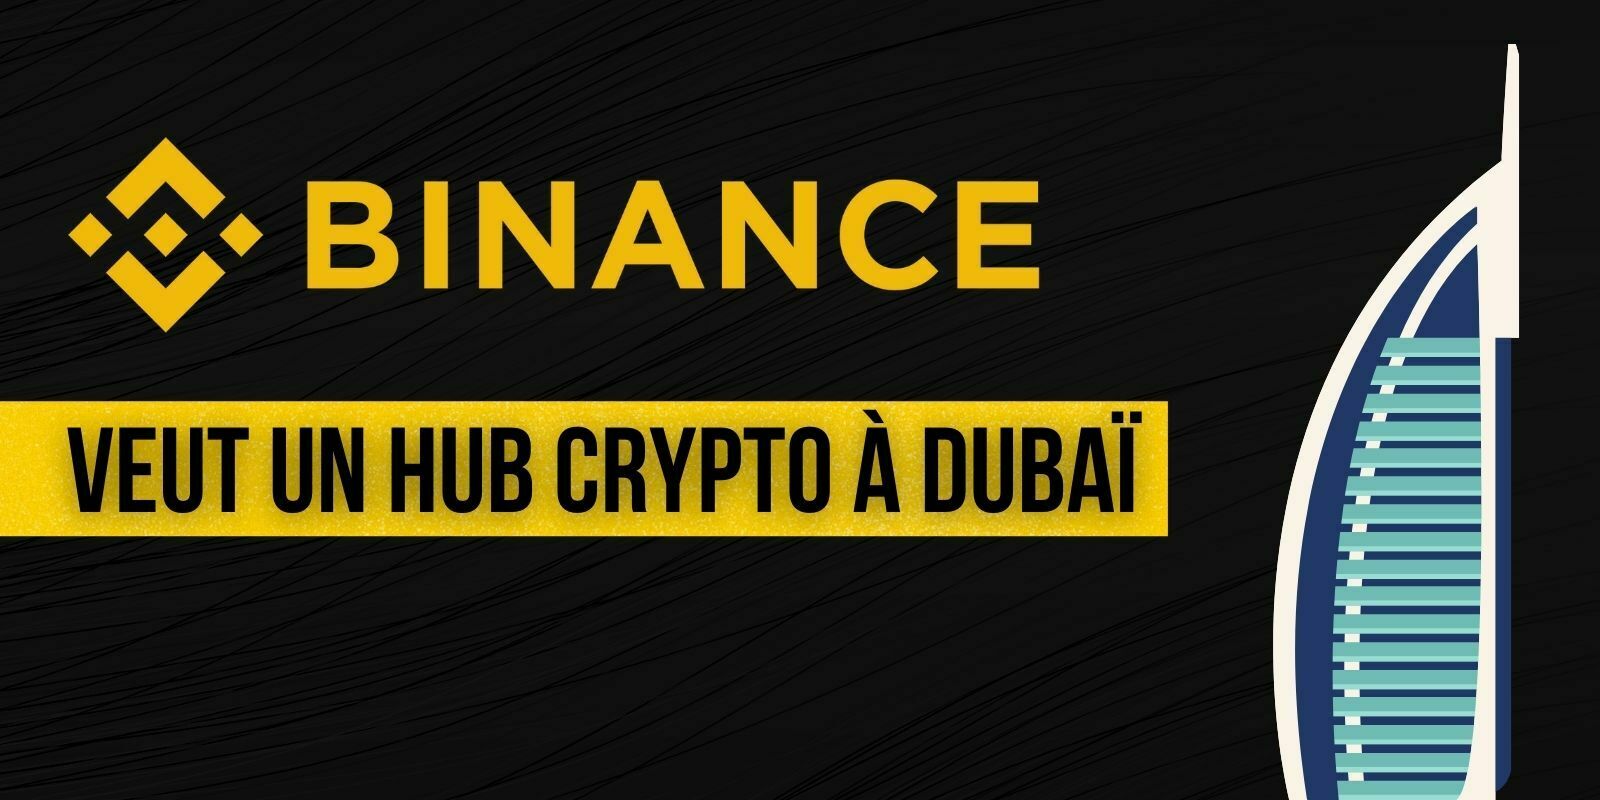 La plateforme Binance va installer un hub pour les cryptomonnaies à Dubaï